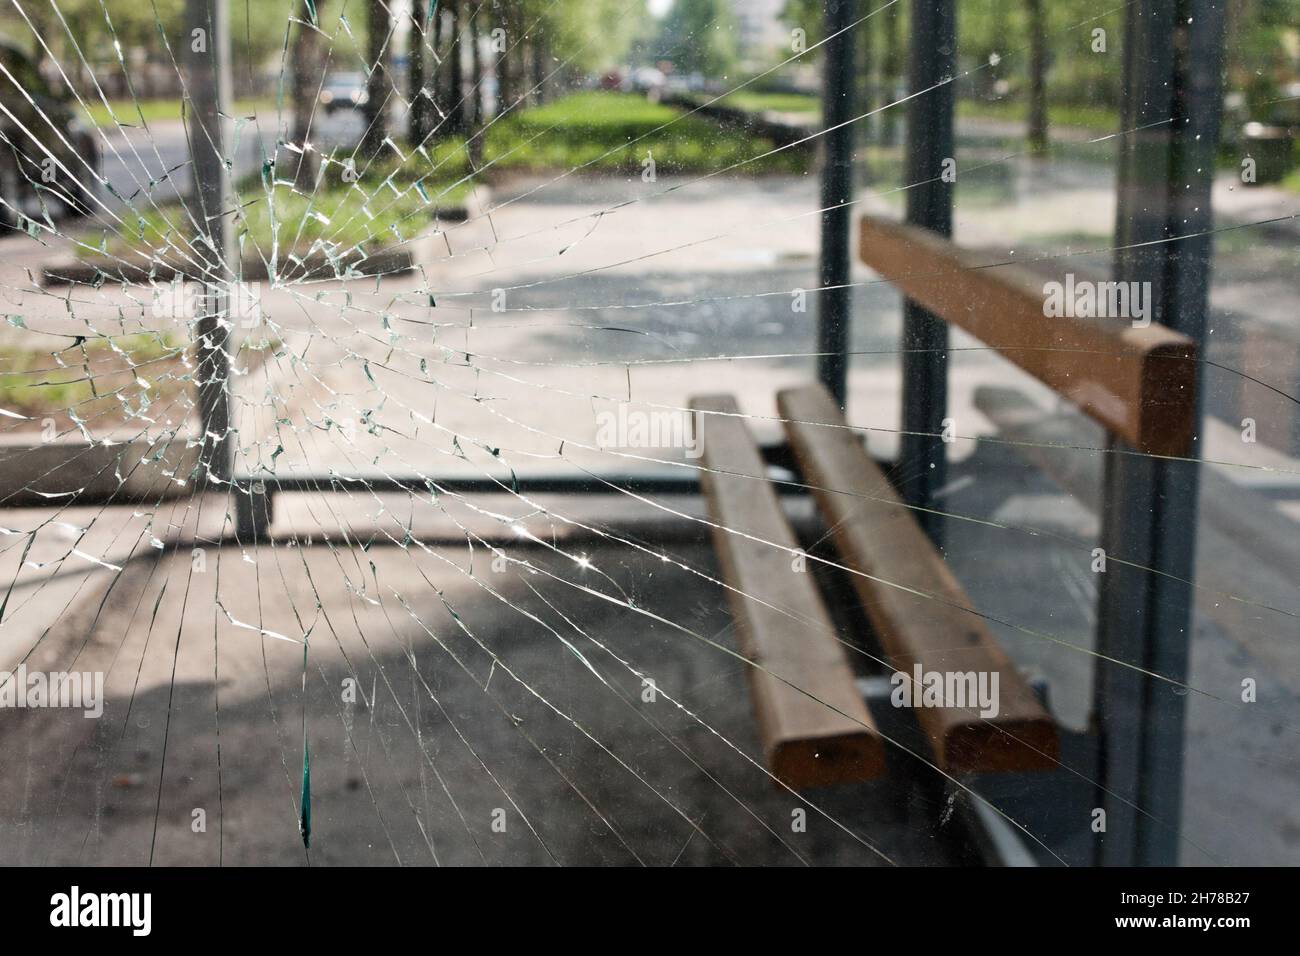 Le banc se trouve derrière le verre brisé de l'arrêt de bus Banque D'Images